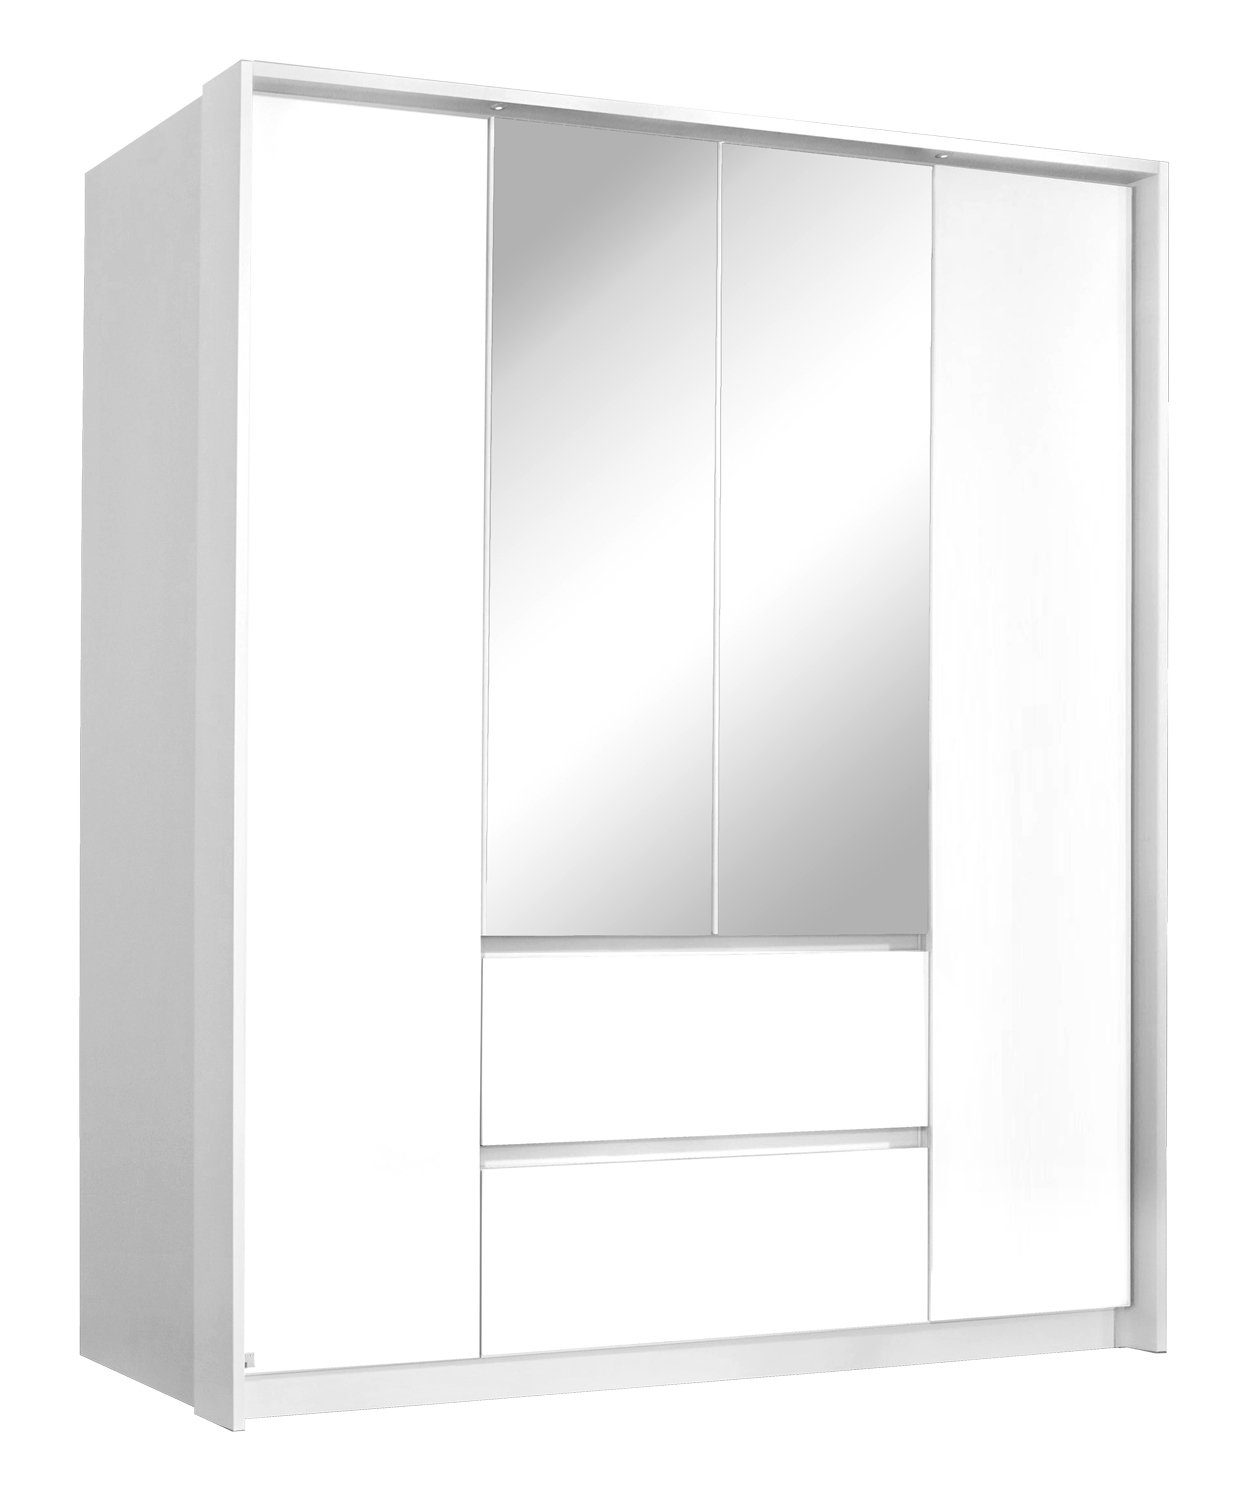 rauch Drehtürenschrank Kleiderschrank NIDDA, B 181 cm x H 197 cm, Alpinweiß, 4 Türen, 2 Schubladen, mit Spiegel | Drehtürenschränke